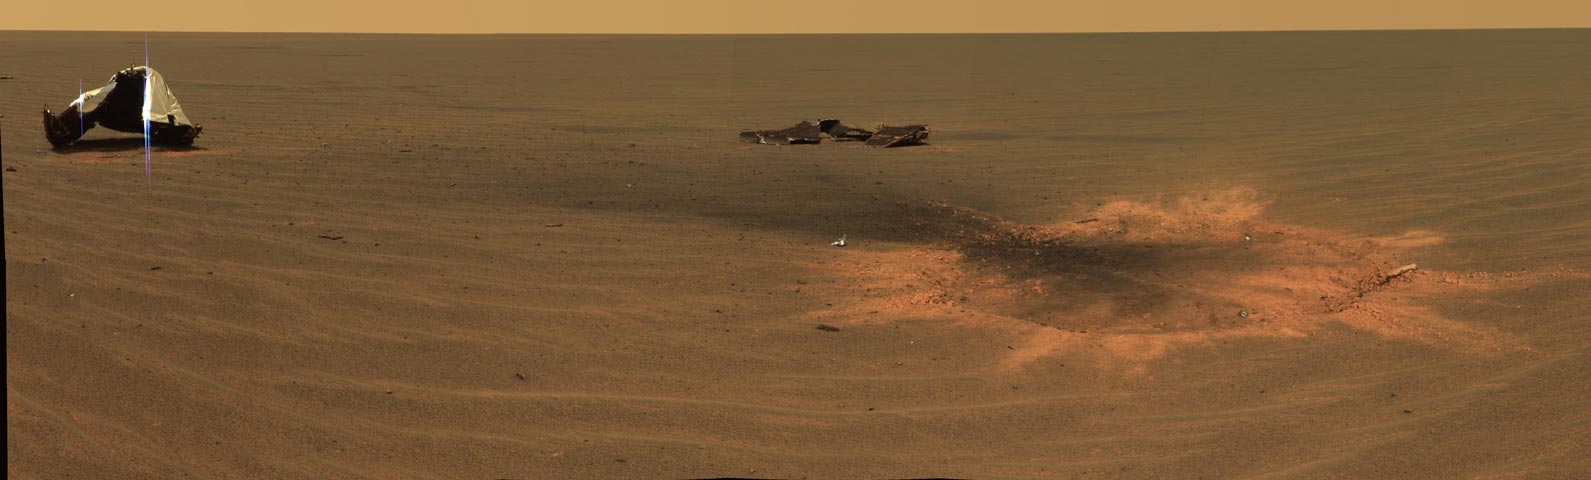 Un autorretrato del rover de Curiosity en Marte